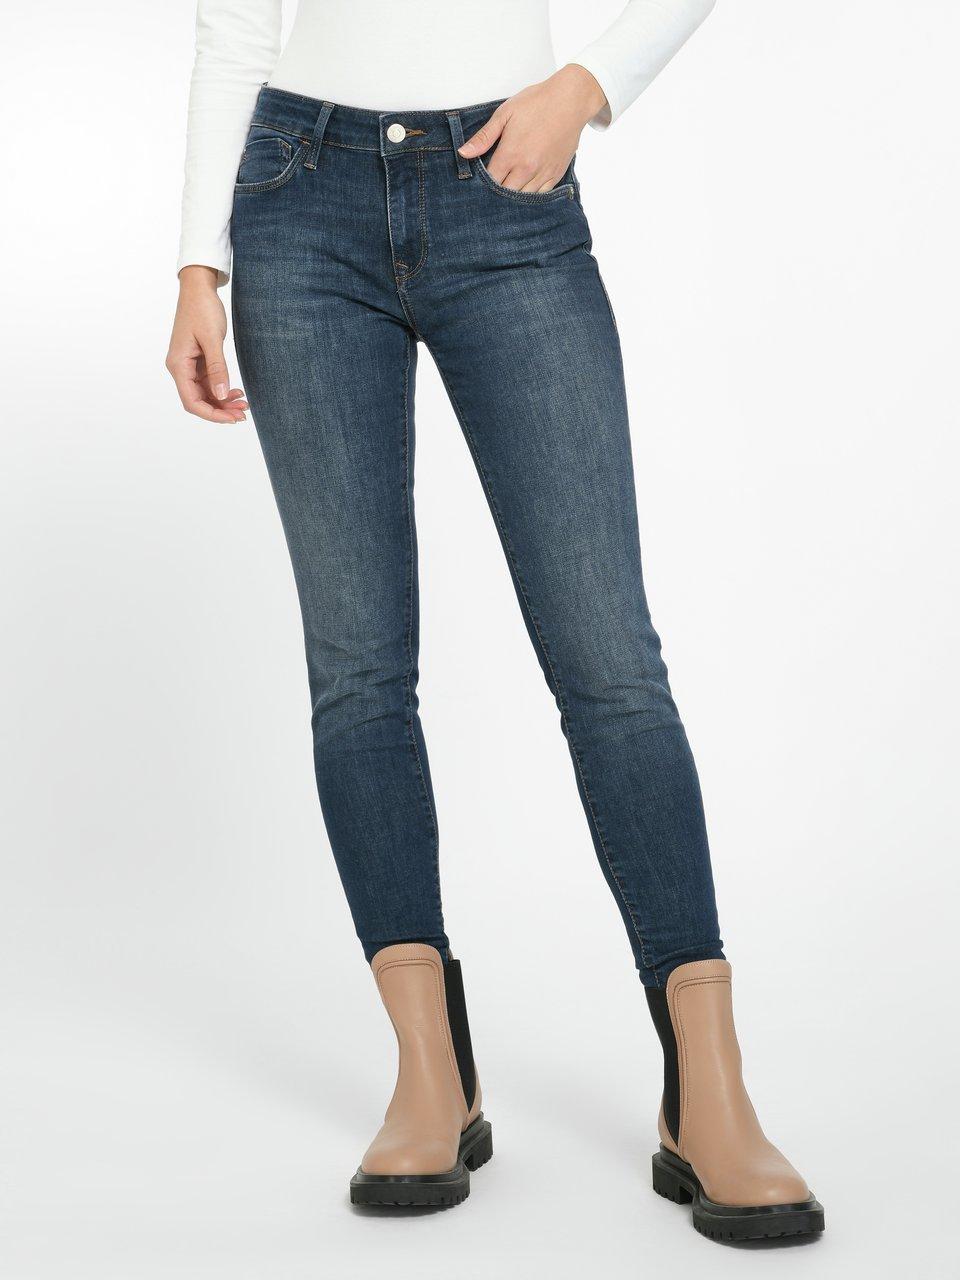 MAVI - Jeans in inch-lengte 28